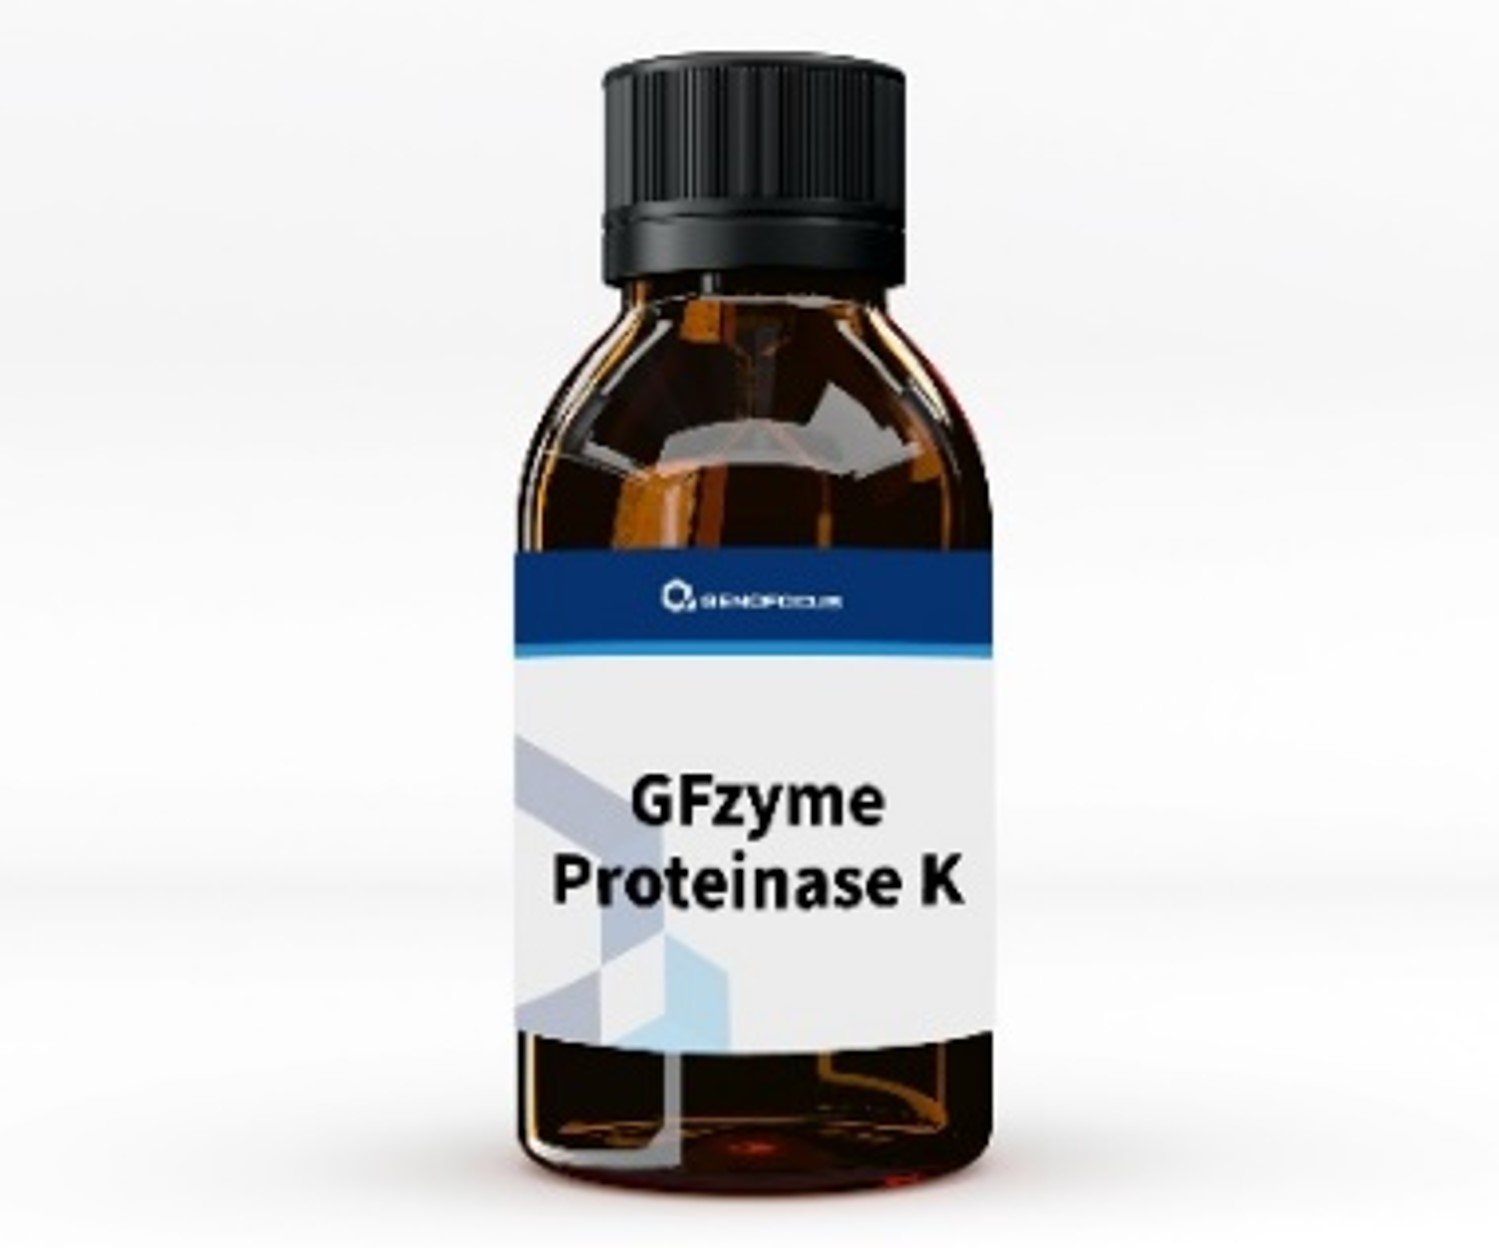 Gfzyme Proteinase K